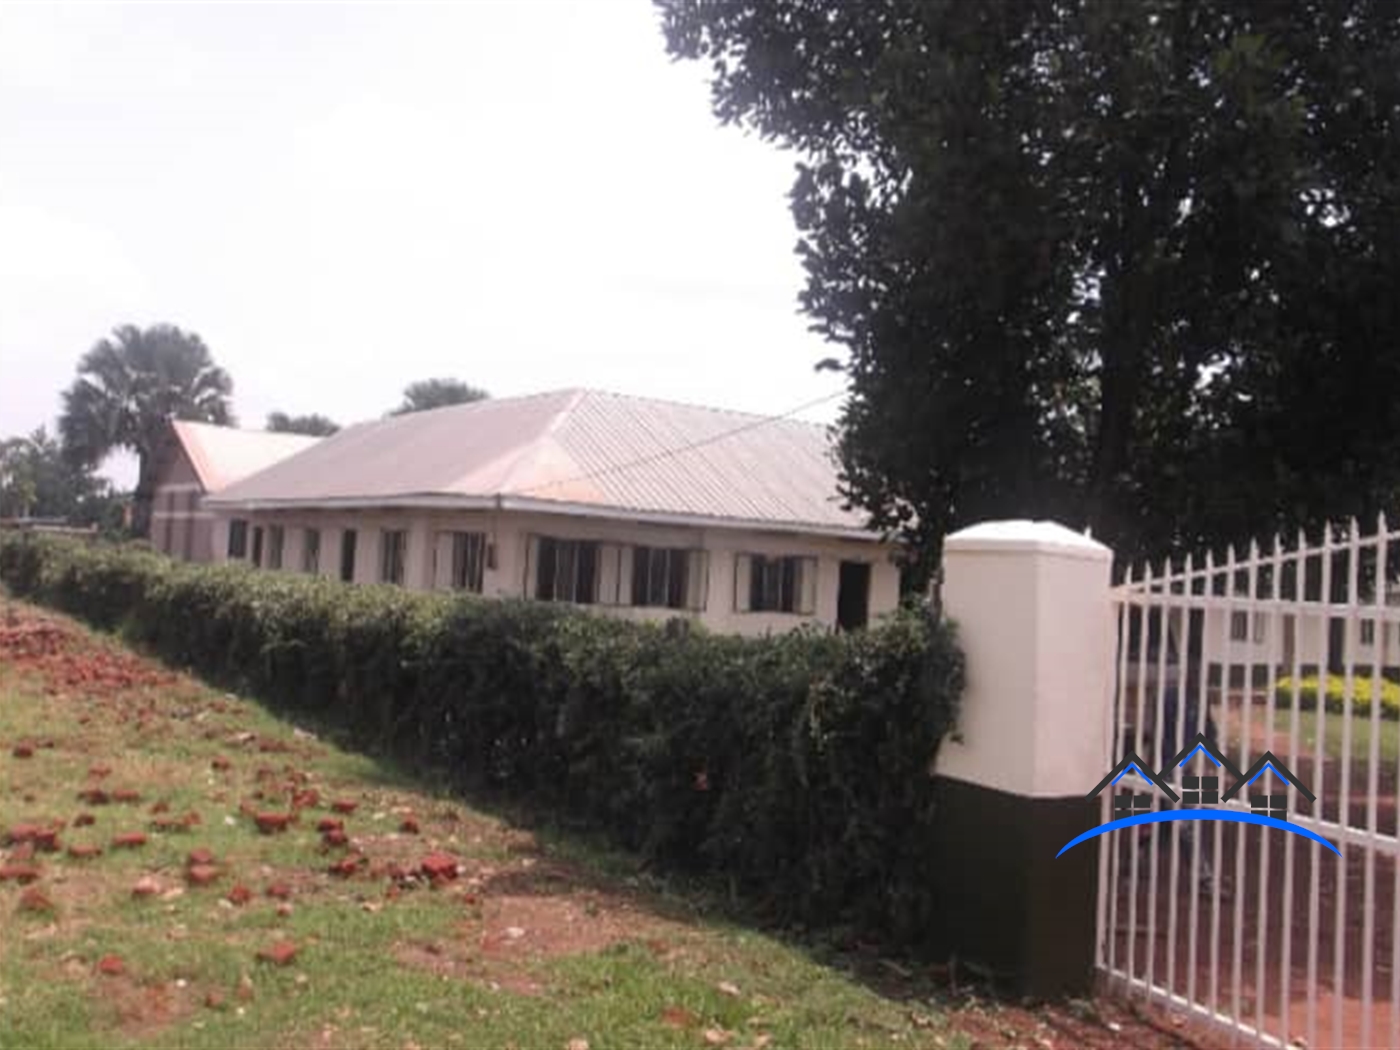 School for sale in Njeru Jinja